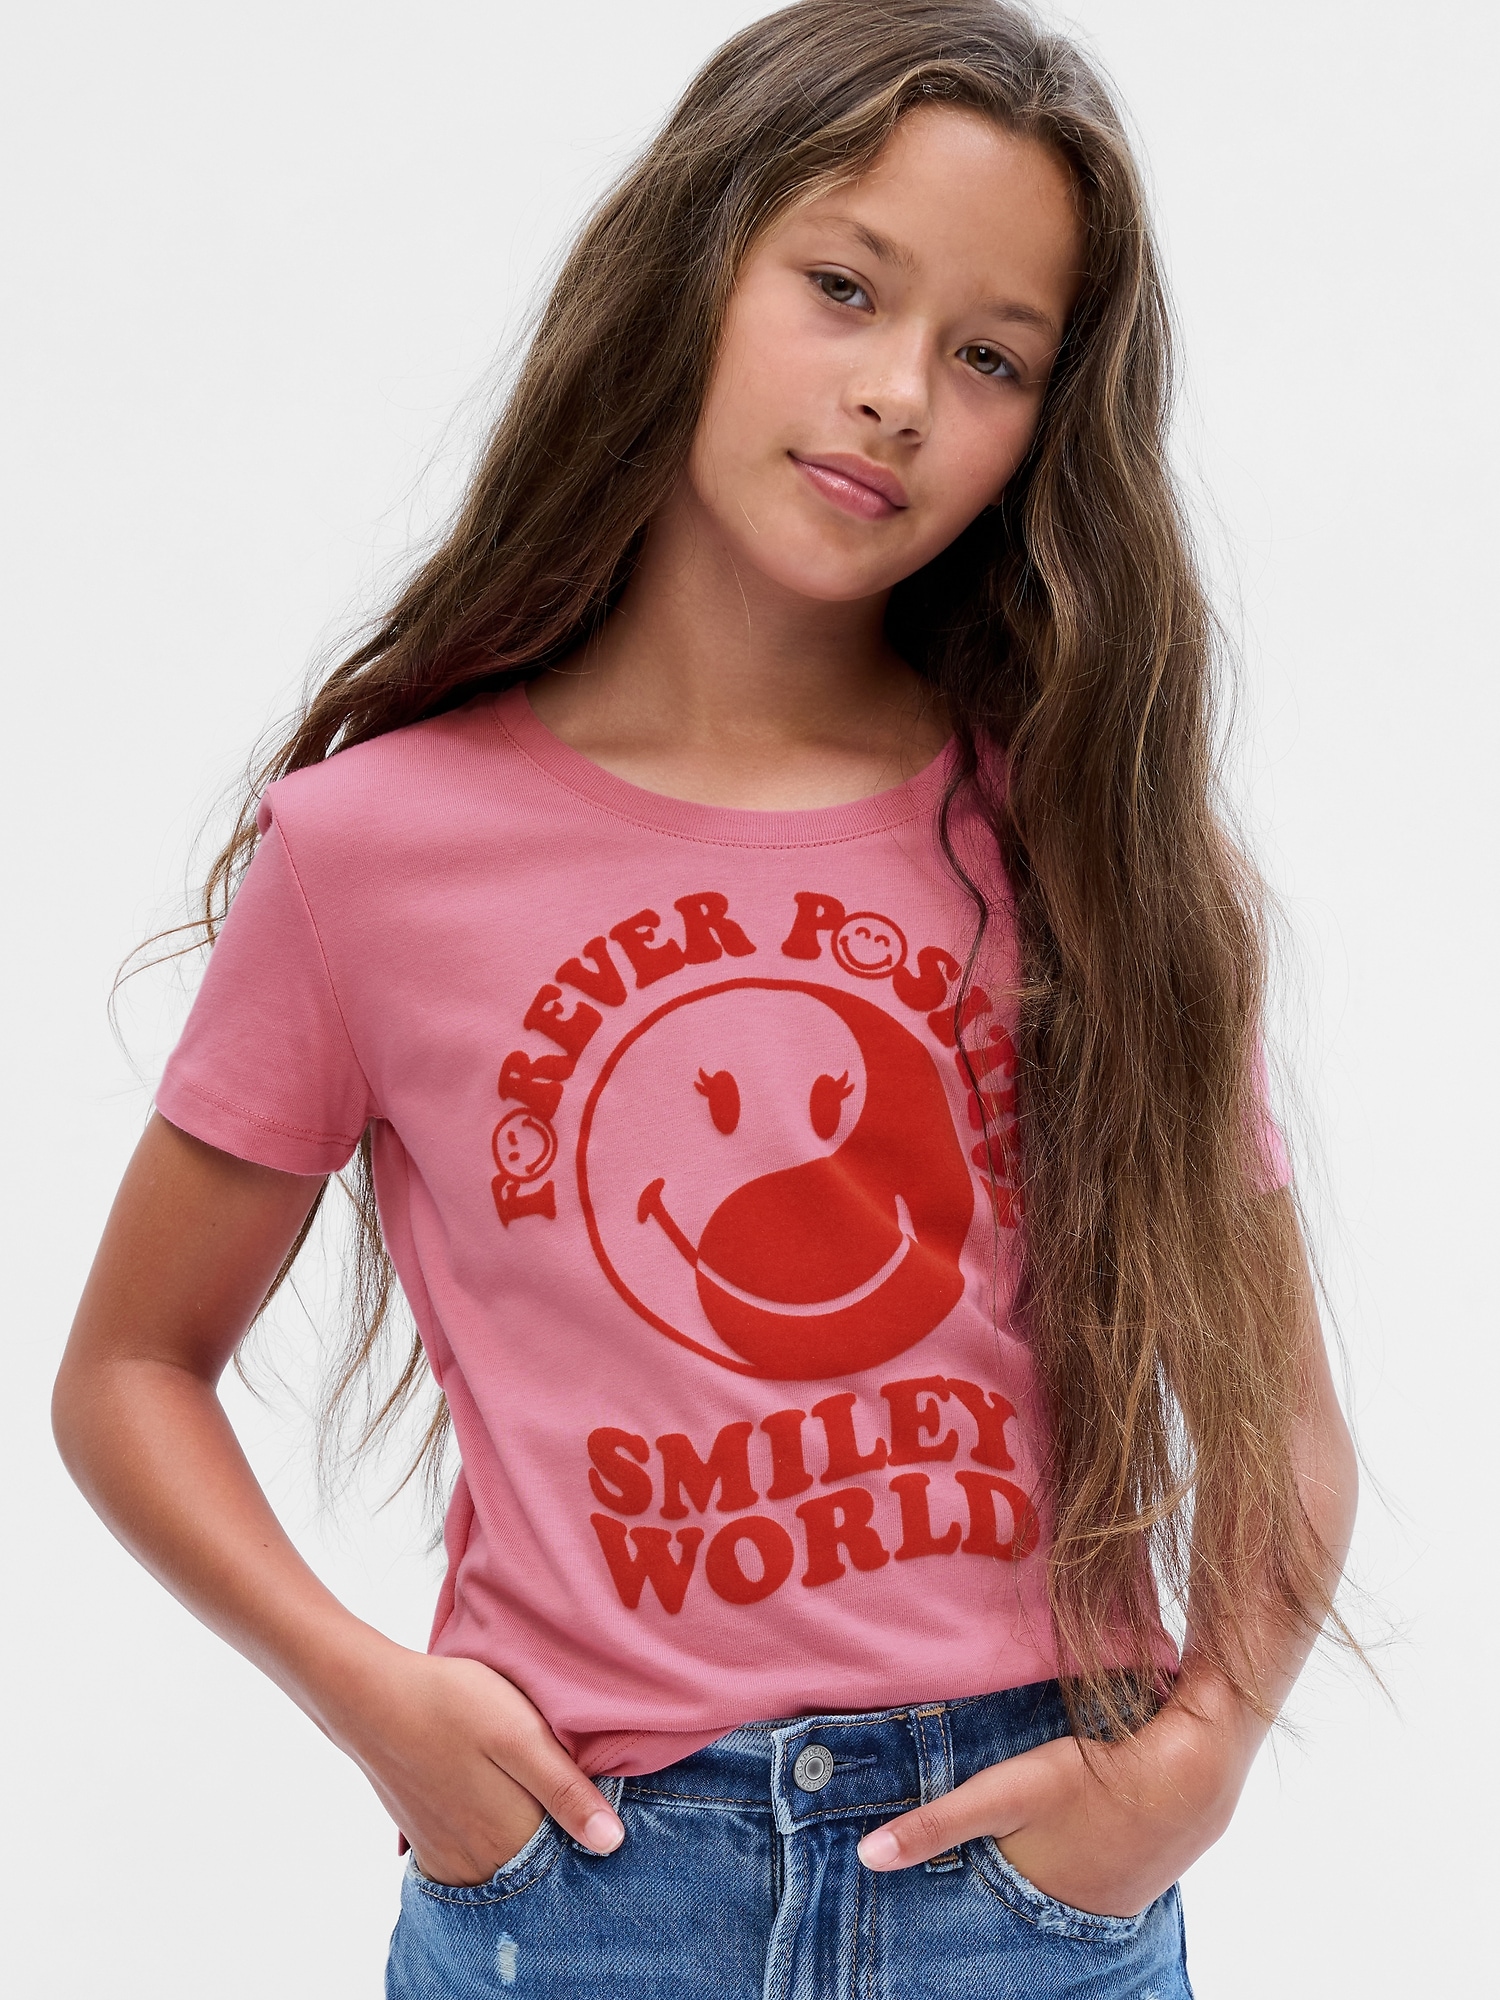 Gap × Gap | Graphic T-Shirt Kids SmileyWorld®